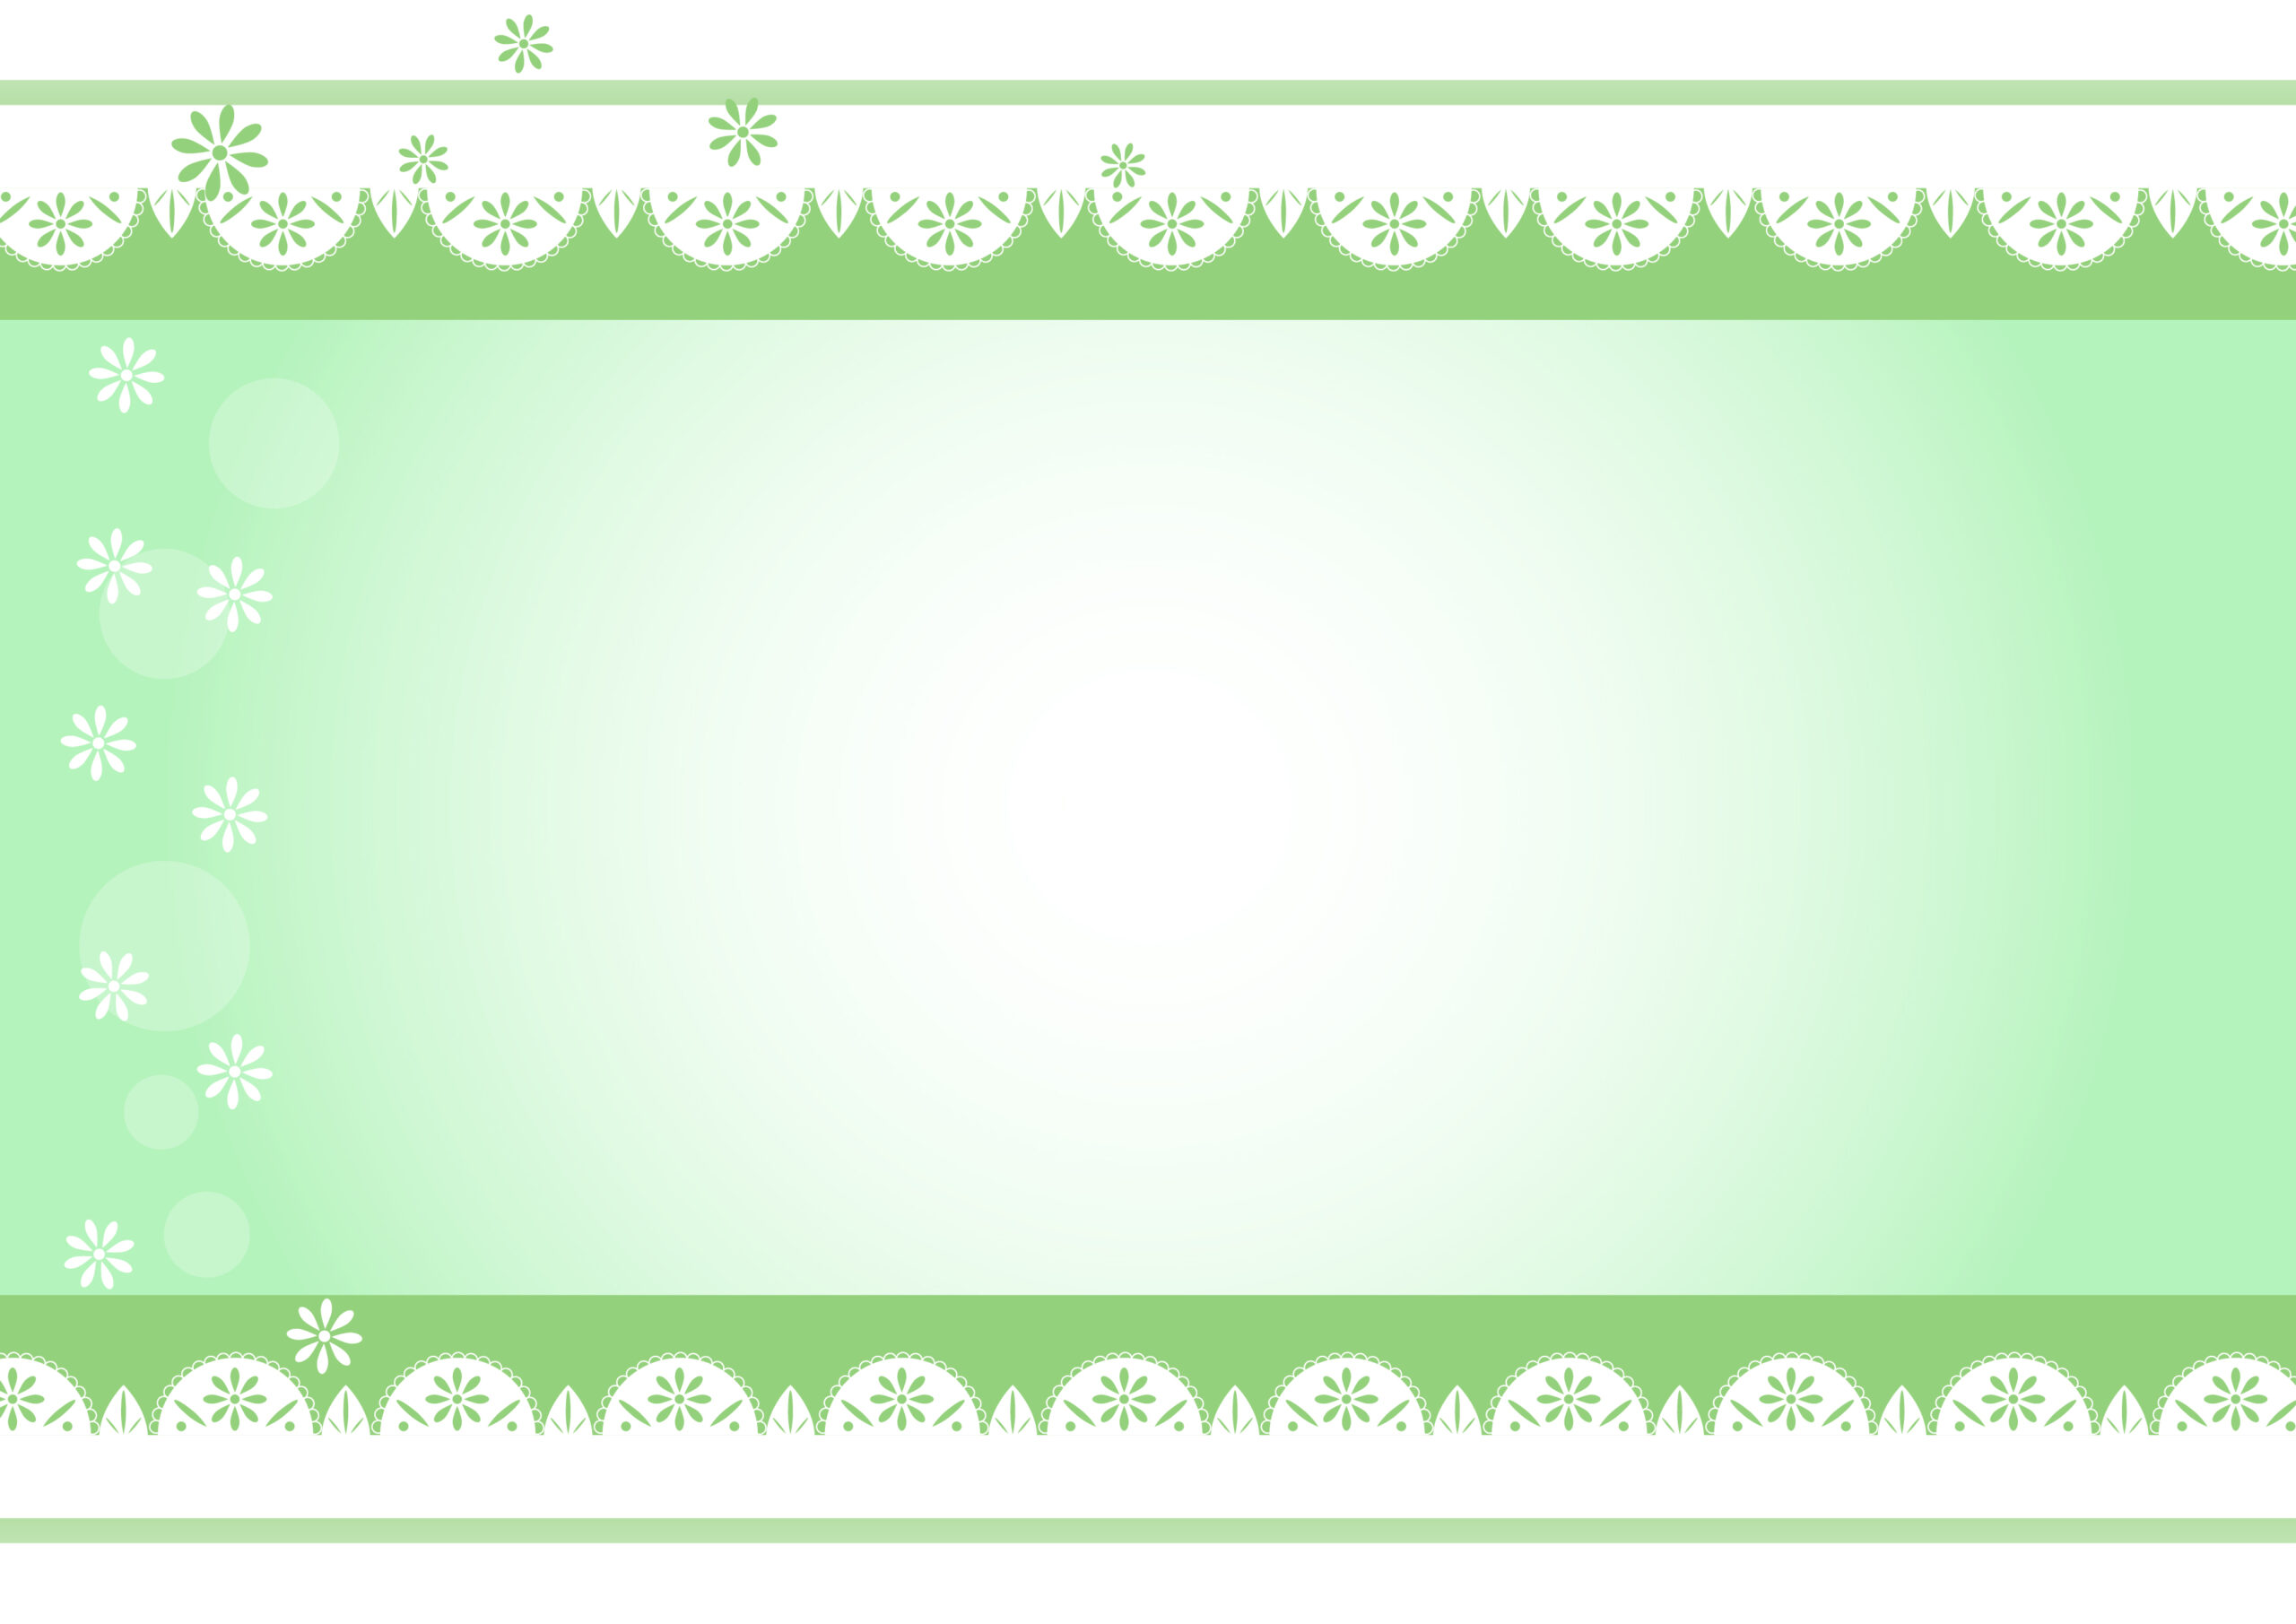 個人で経営するネイルサロンやエステの臨時休業のお知らせの張り紙やＳＮＳ投稿の文字背景・壁紙に使えるフレームになり、花模様入りのレースと爽やかな緑色デザインの飾り枠です。ポスターやＰＯＰ作成などにもご使用いただけます。ダウンロード：J